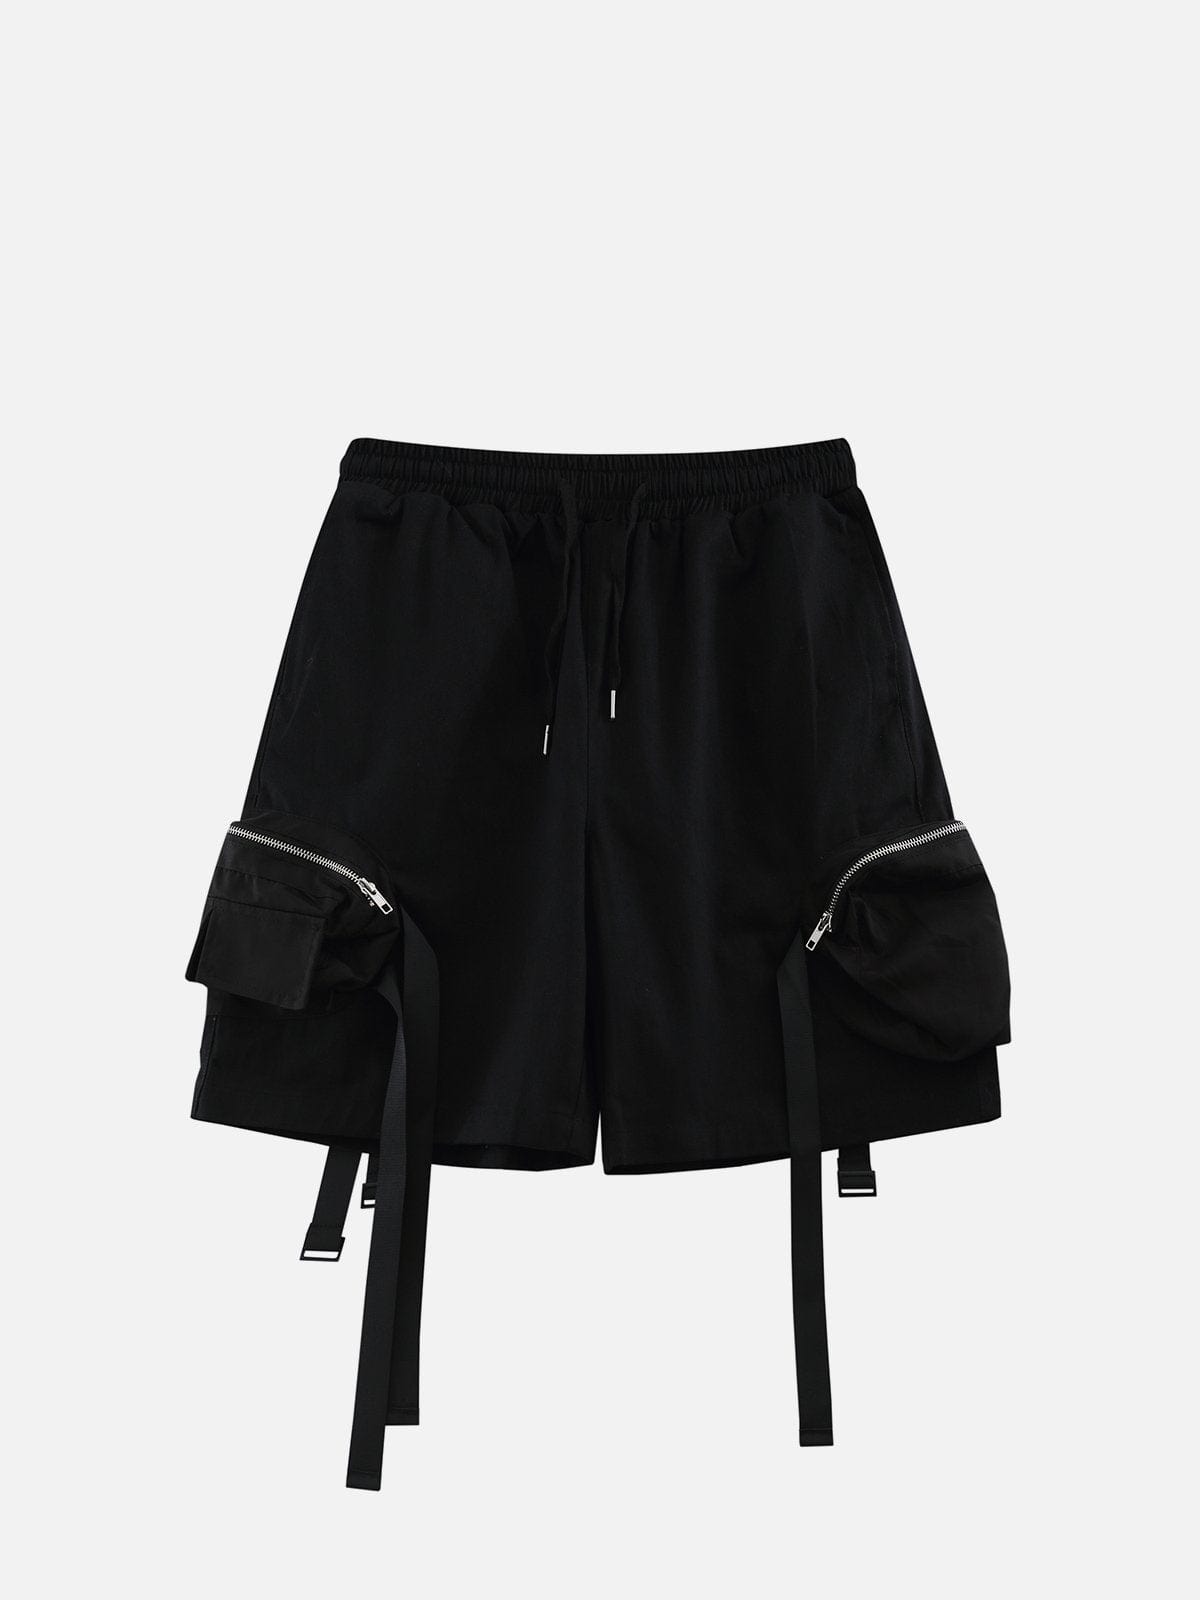 NEV Zip Pocket Streamer Shorts